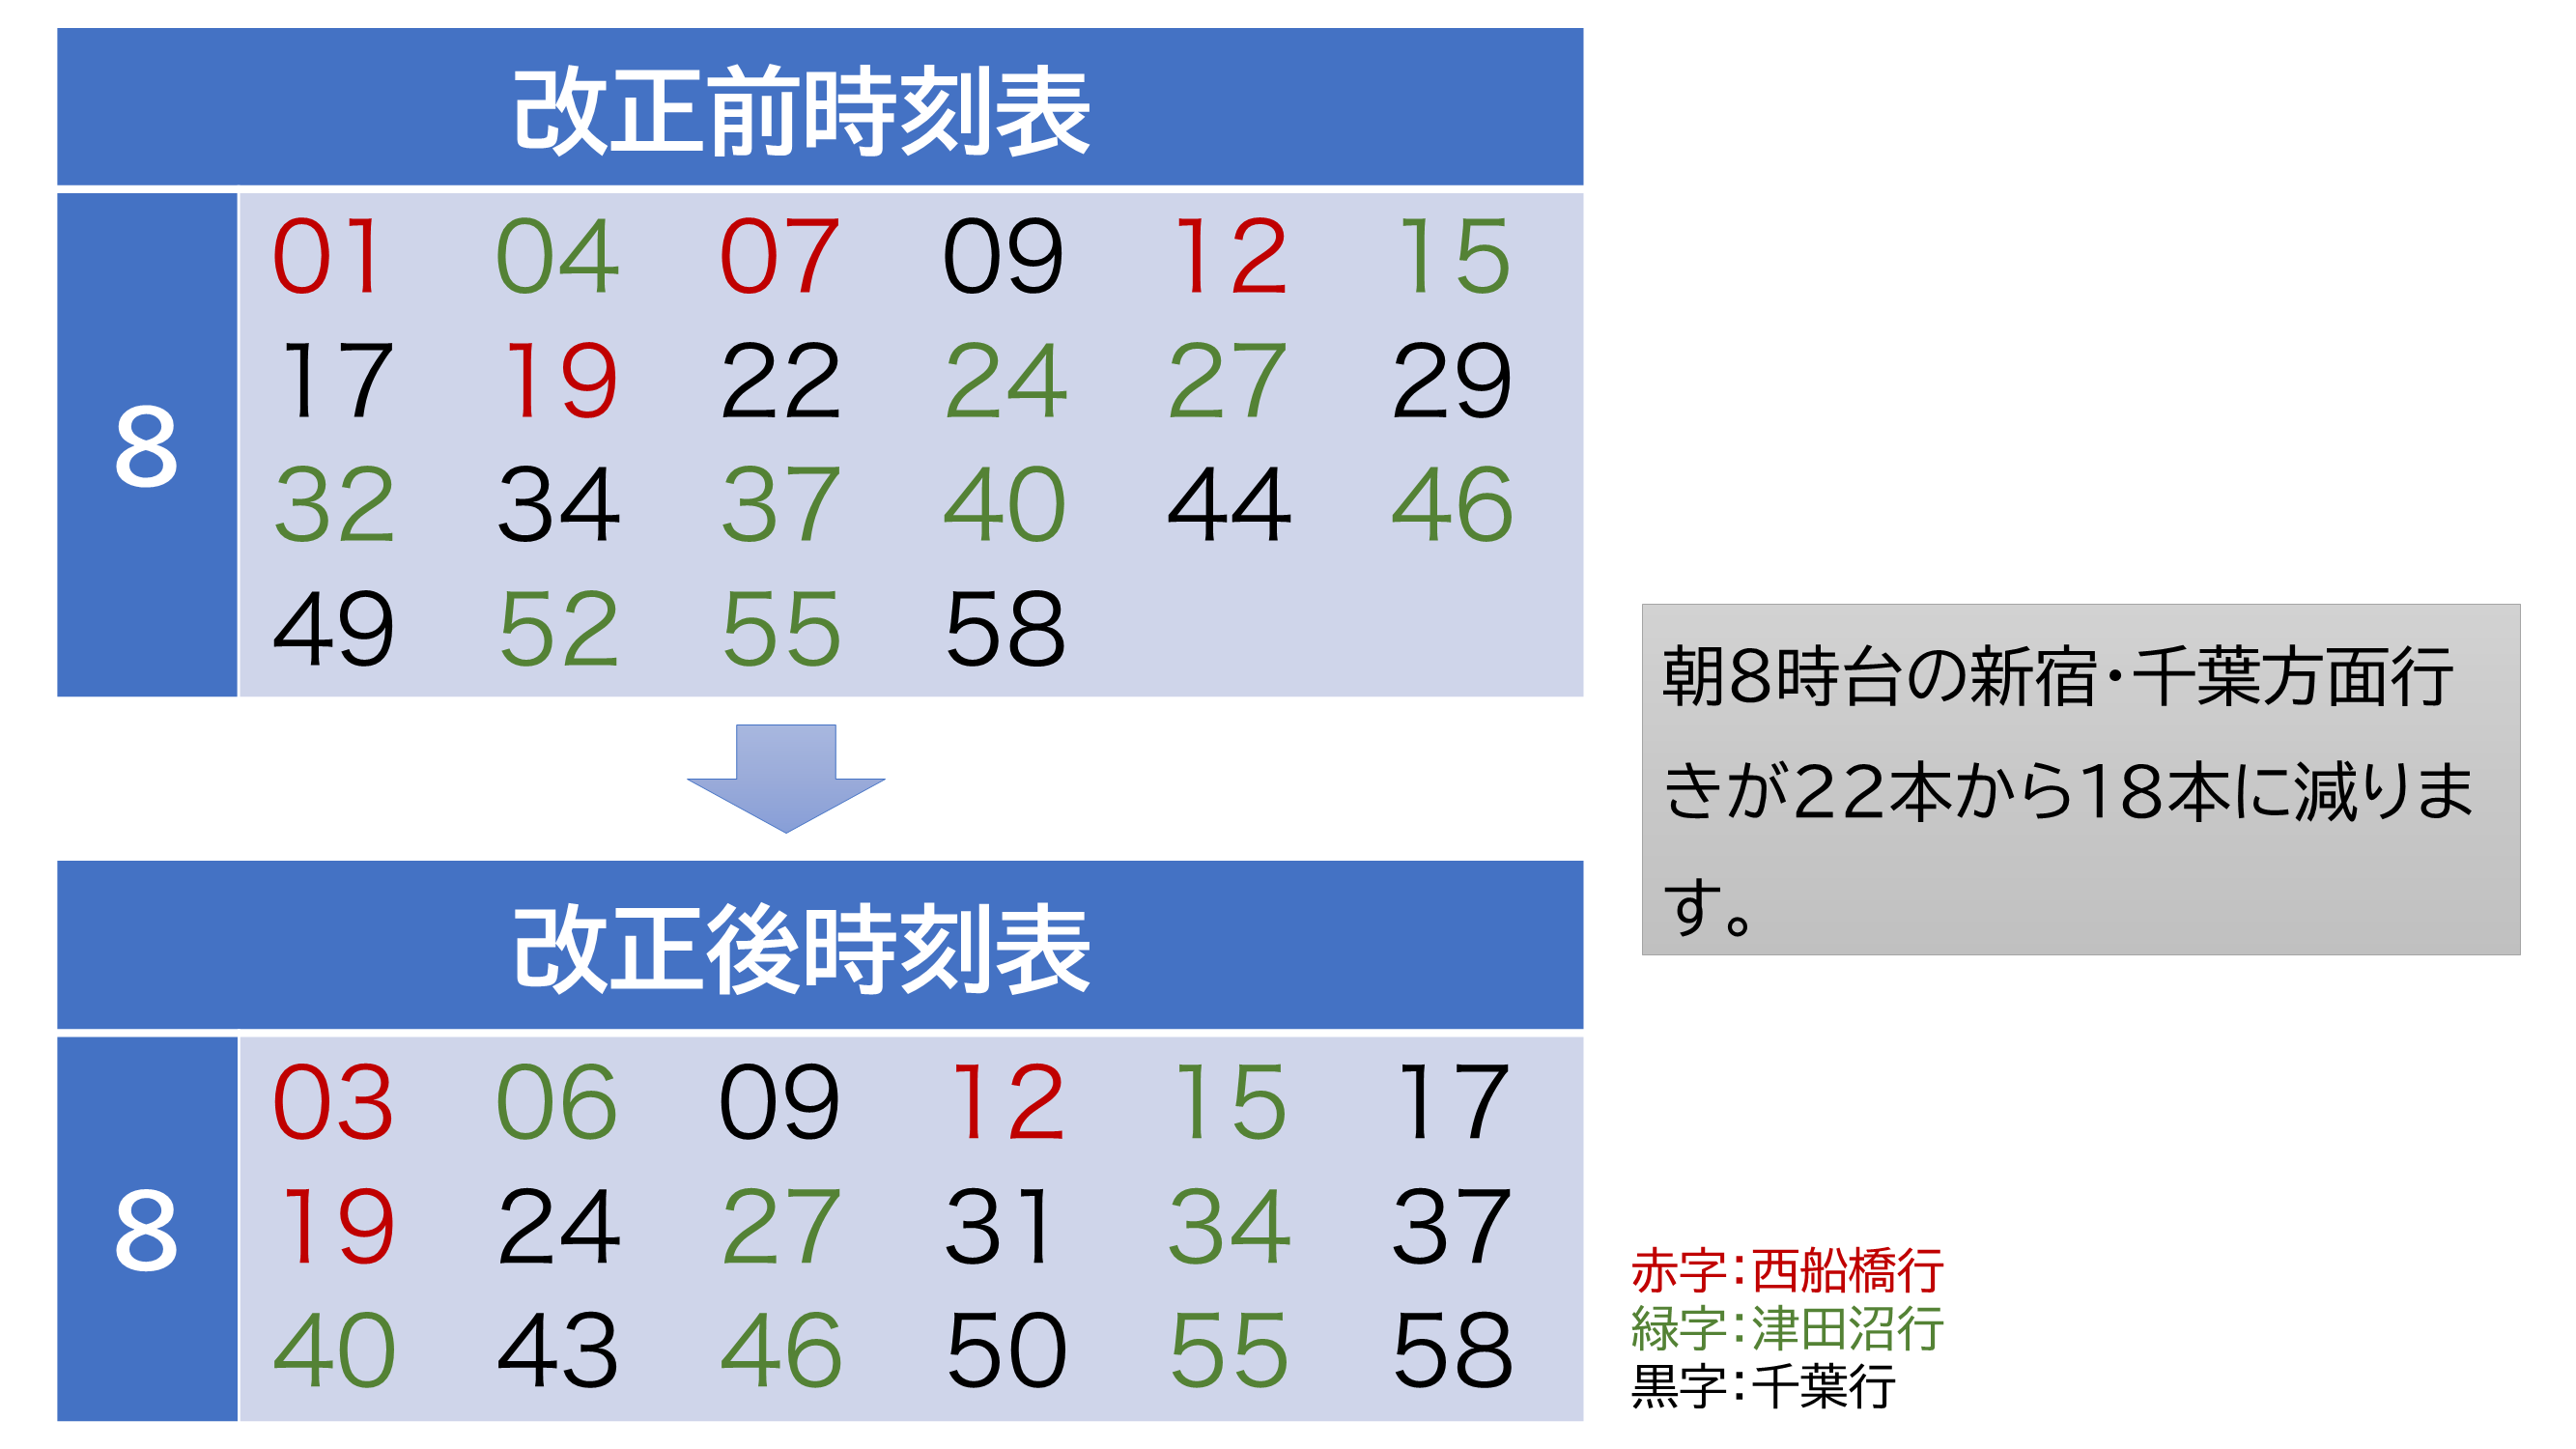 ダイヤ 改正 線 総武 東京駅発着の中央線各駅停車が廃止、2020年春のダイヤ改正